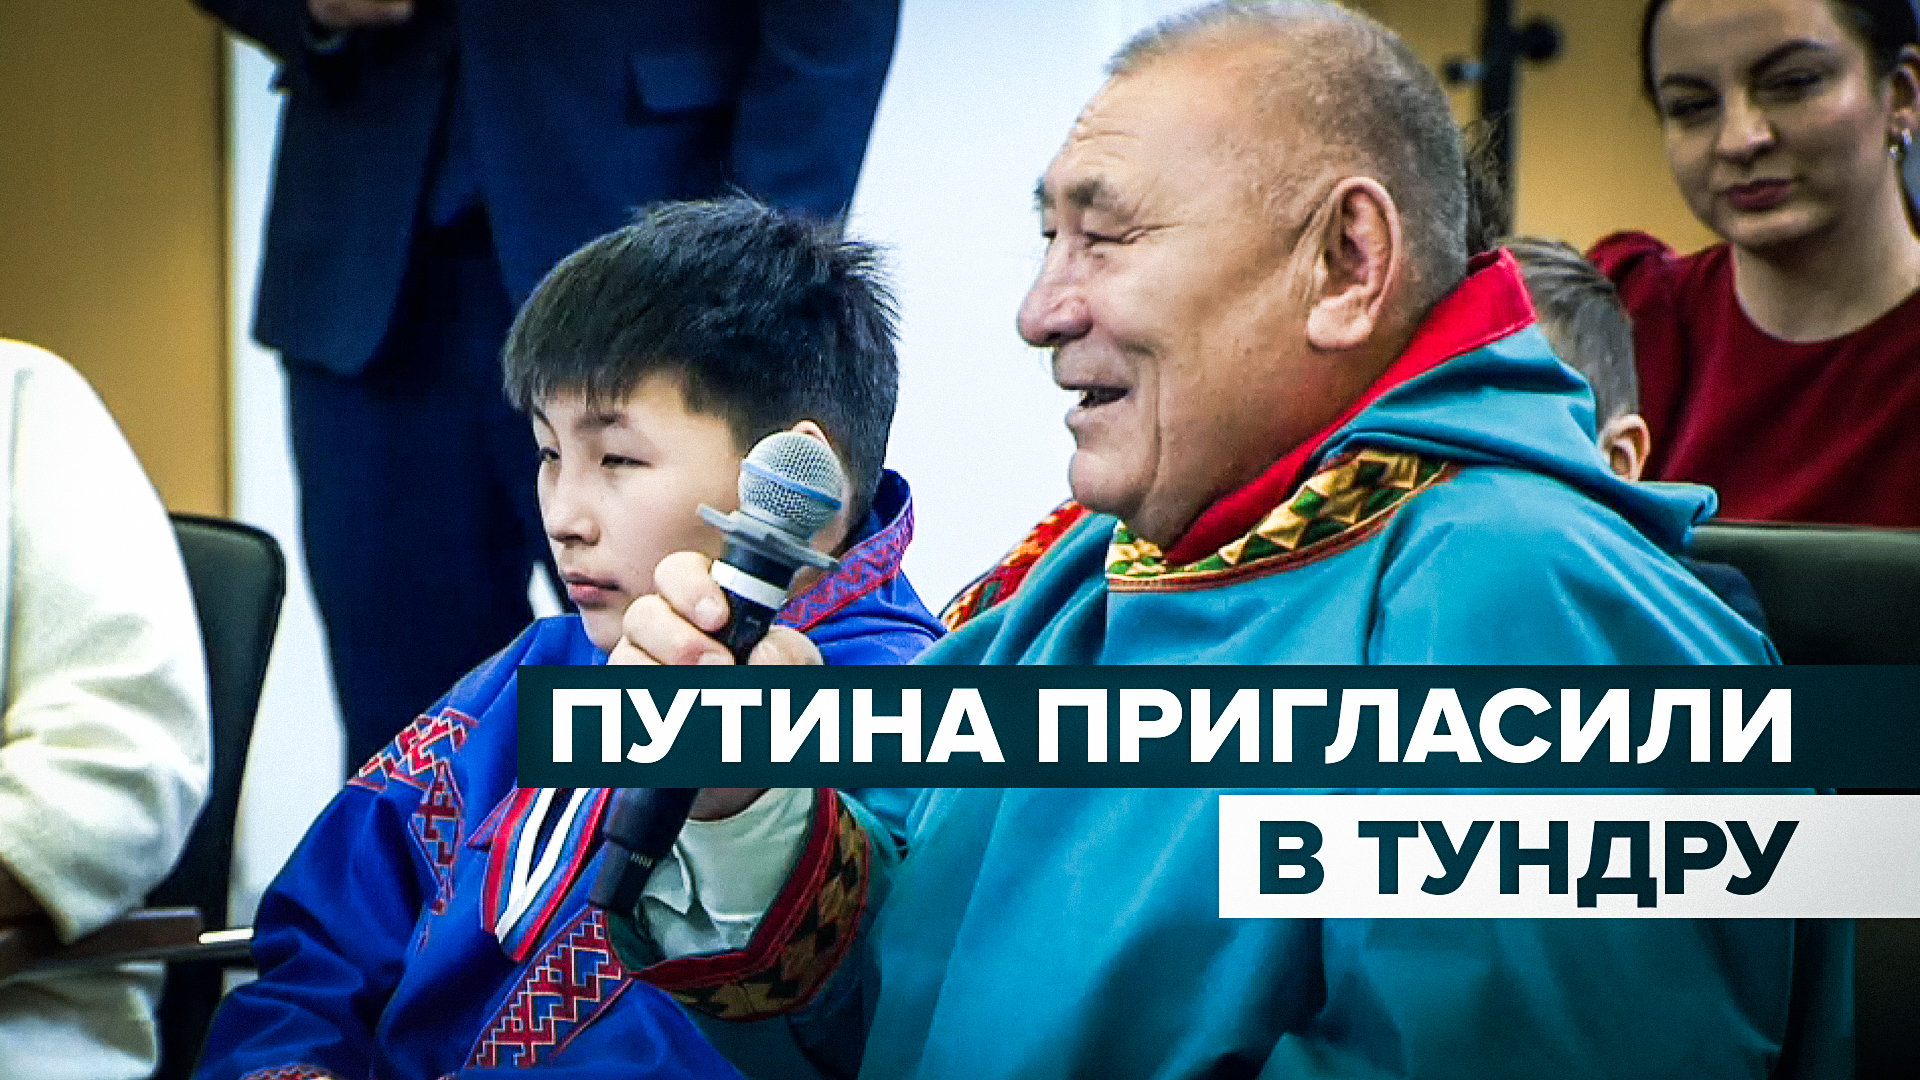 «Покатаем вас на трёх белых оленях»: многодетный житель Ямала пригласил Путина в тундру